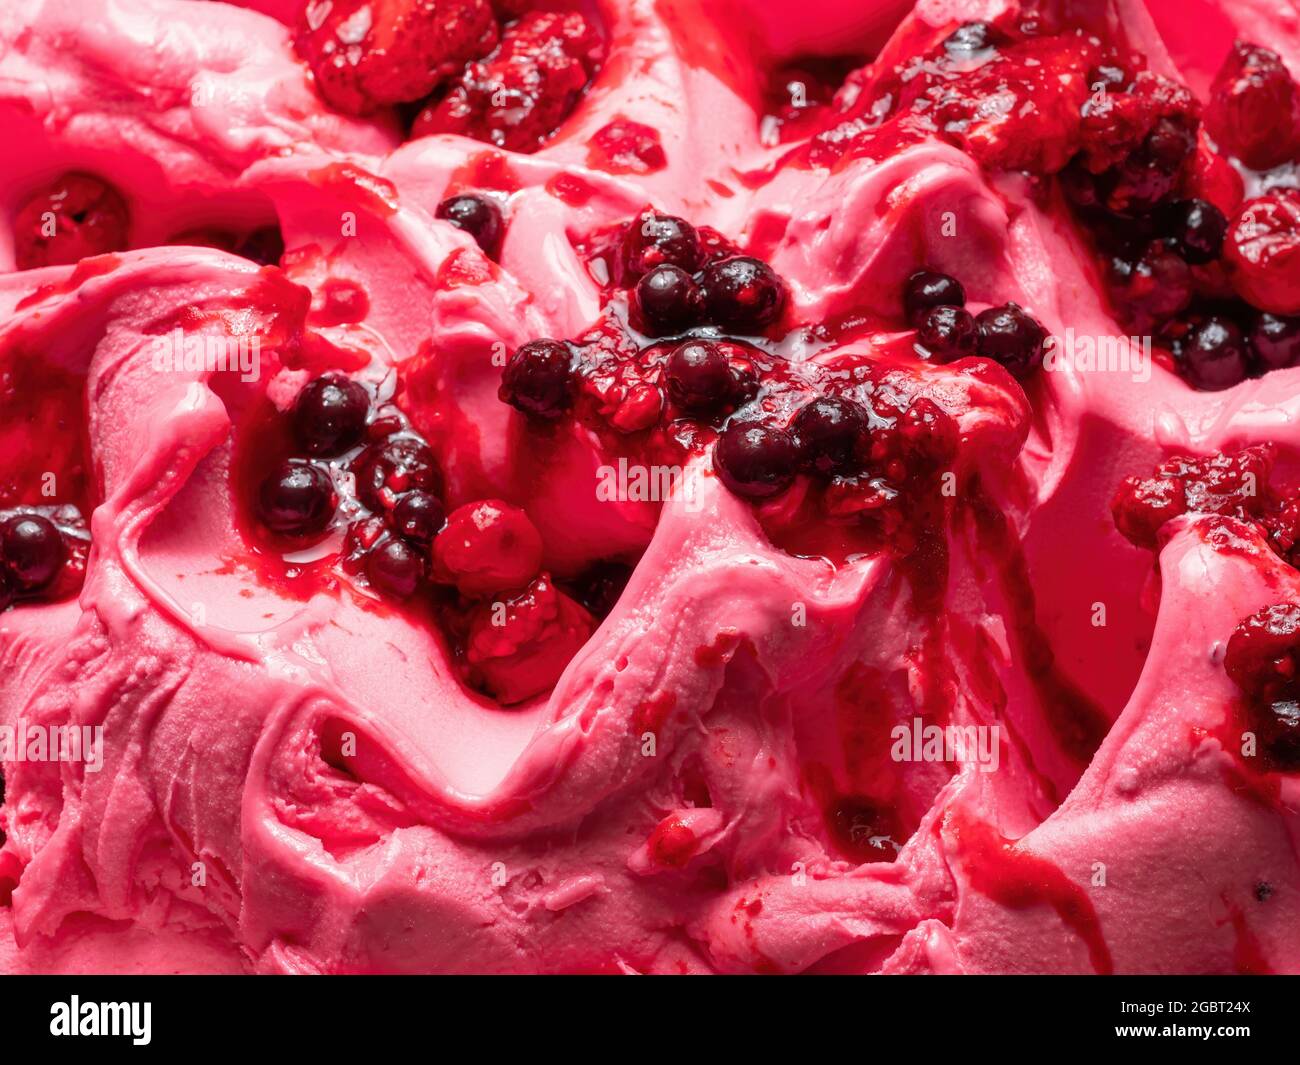 Frozen Forest Flavour gelato - dettaglio full frame. Primo piano di una superficie rosa di gelato coperto con pezzi di frutta rossa. Foto Stock